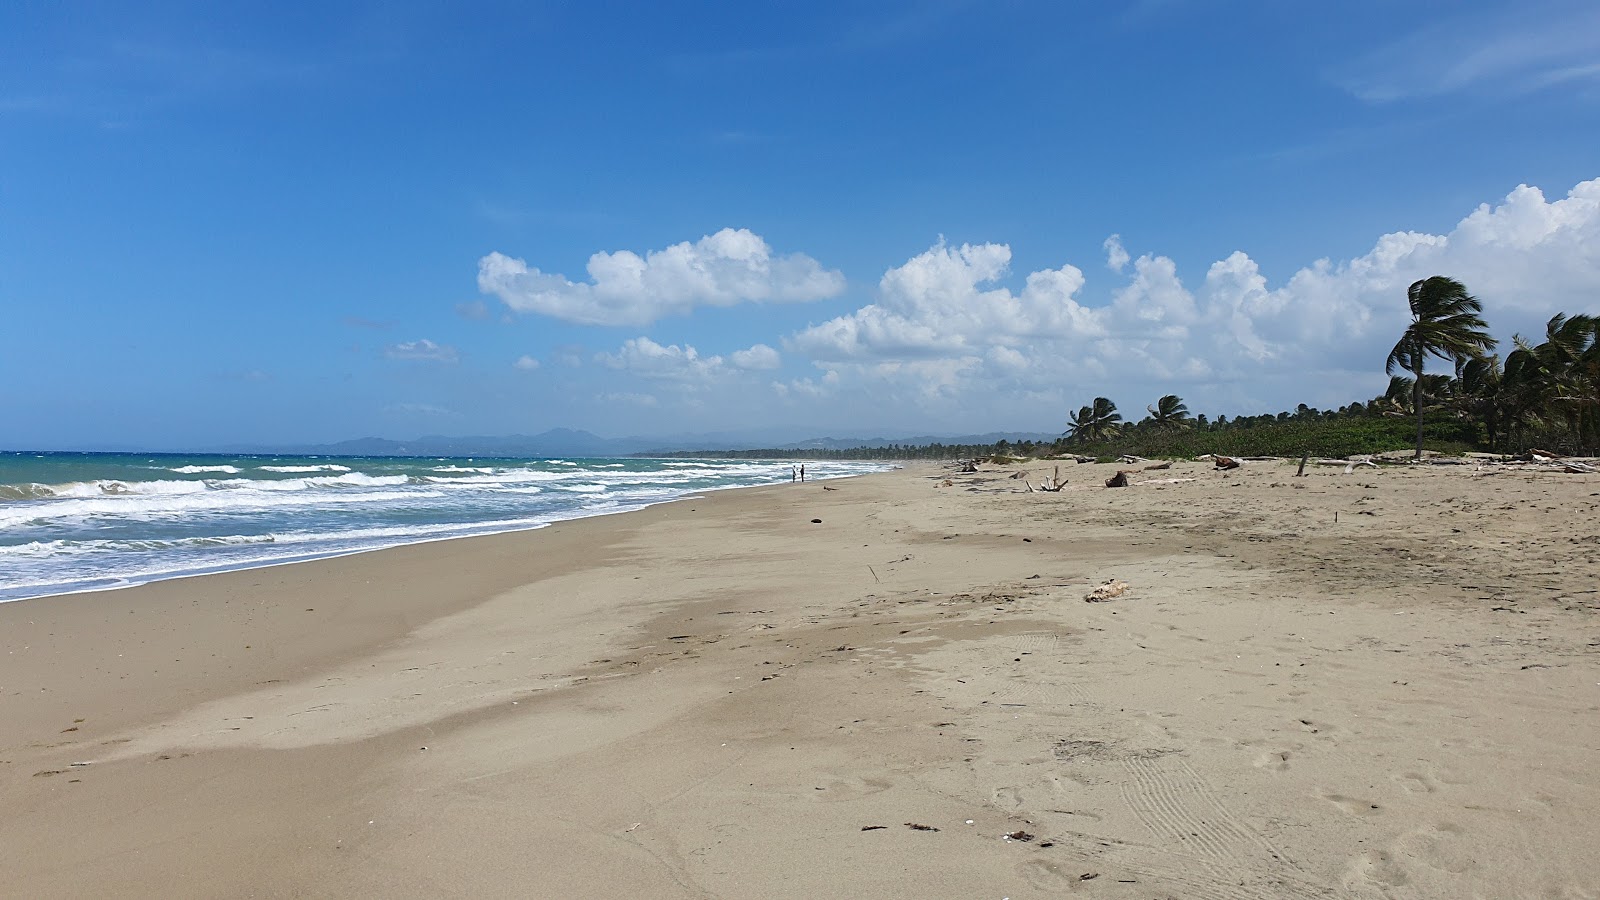 Playa Boca de Yasica'in fotoğrafı parlak kum yüzey ile